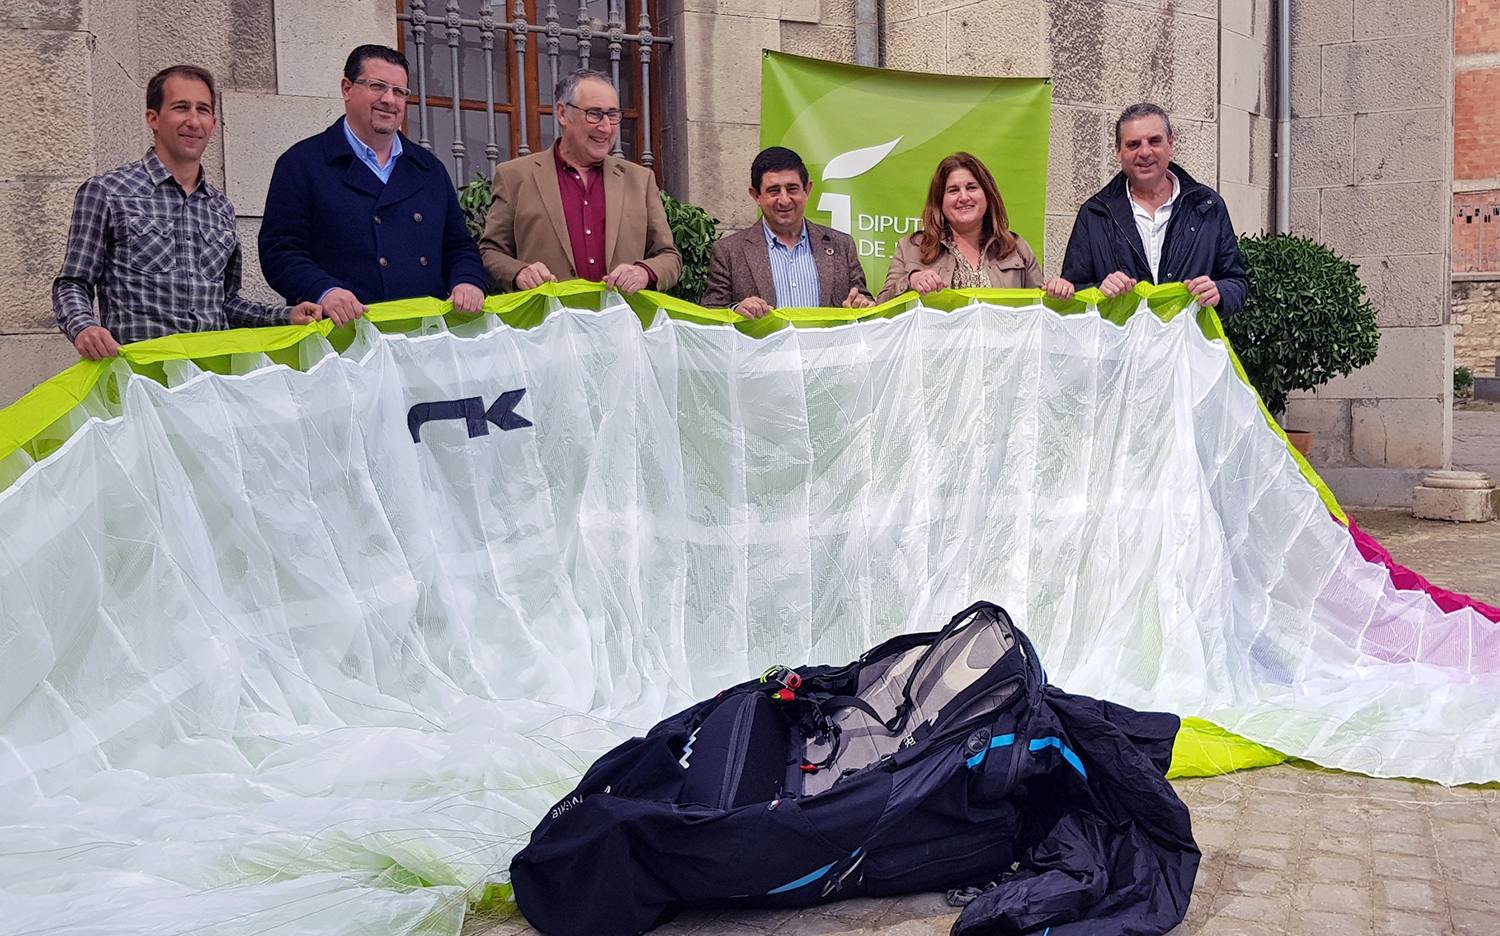 280 pilotos van a participar  en los dos campeonatos de parapente que se van a celebrar en la provincia de Jaén el próximo mayo